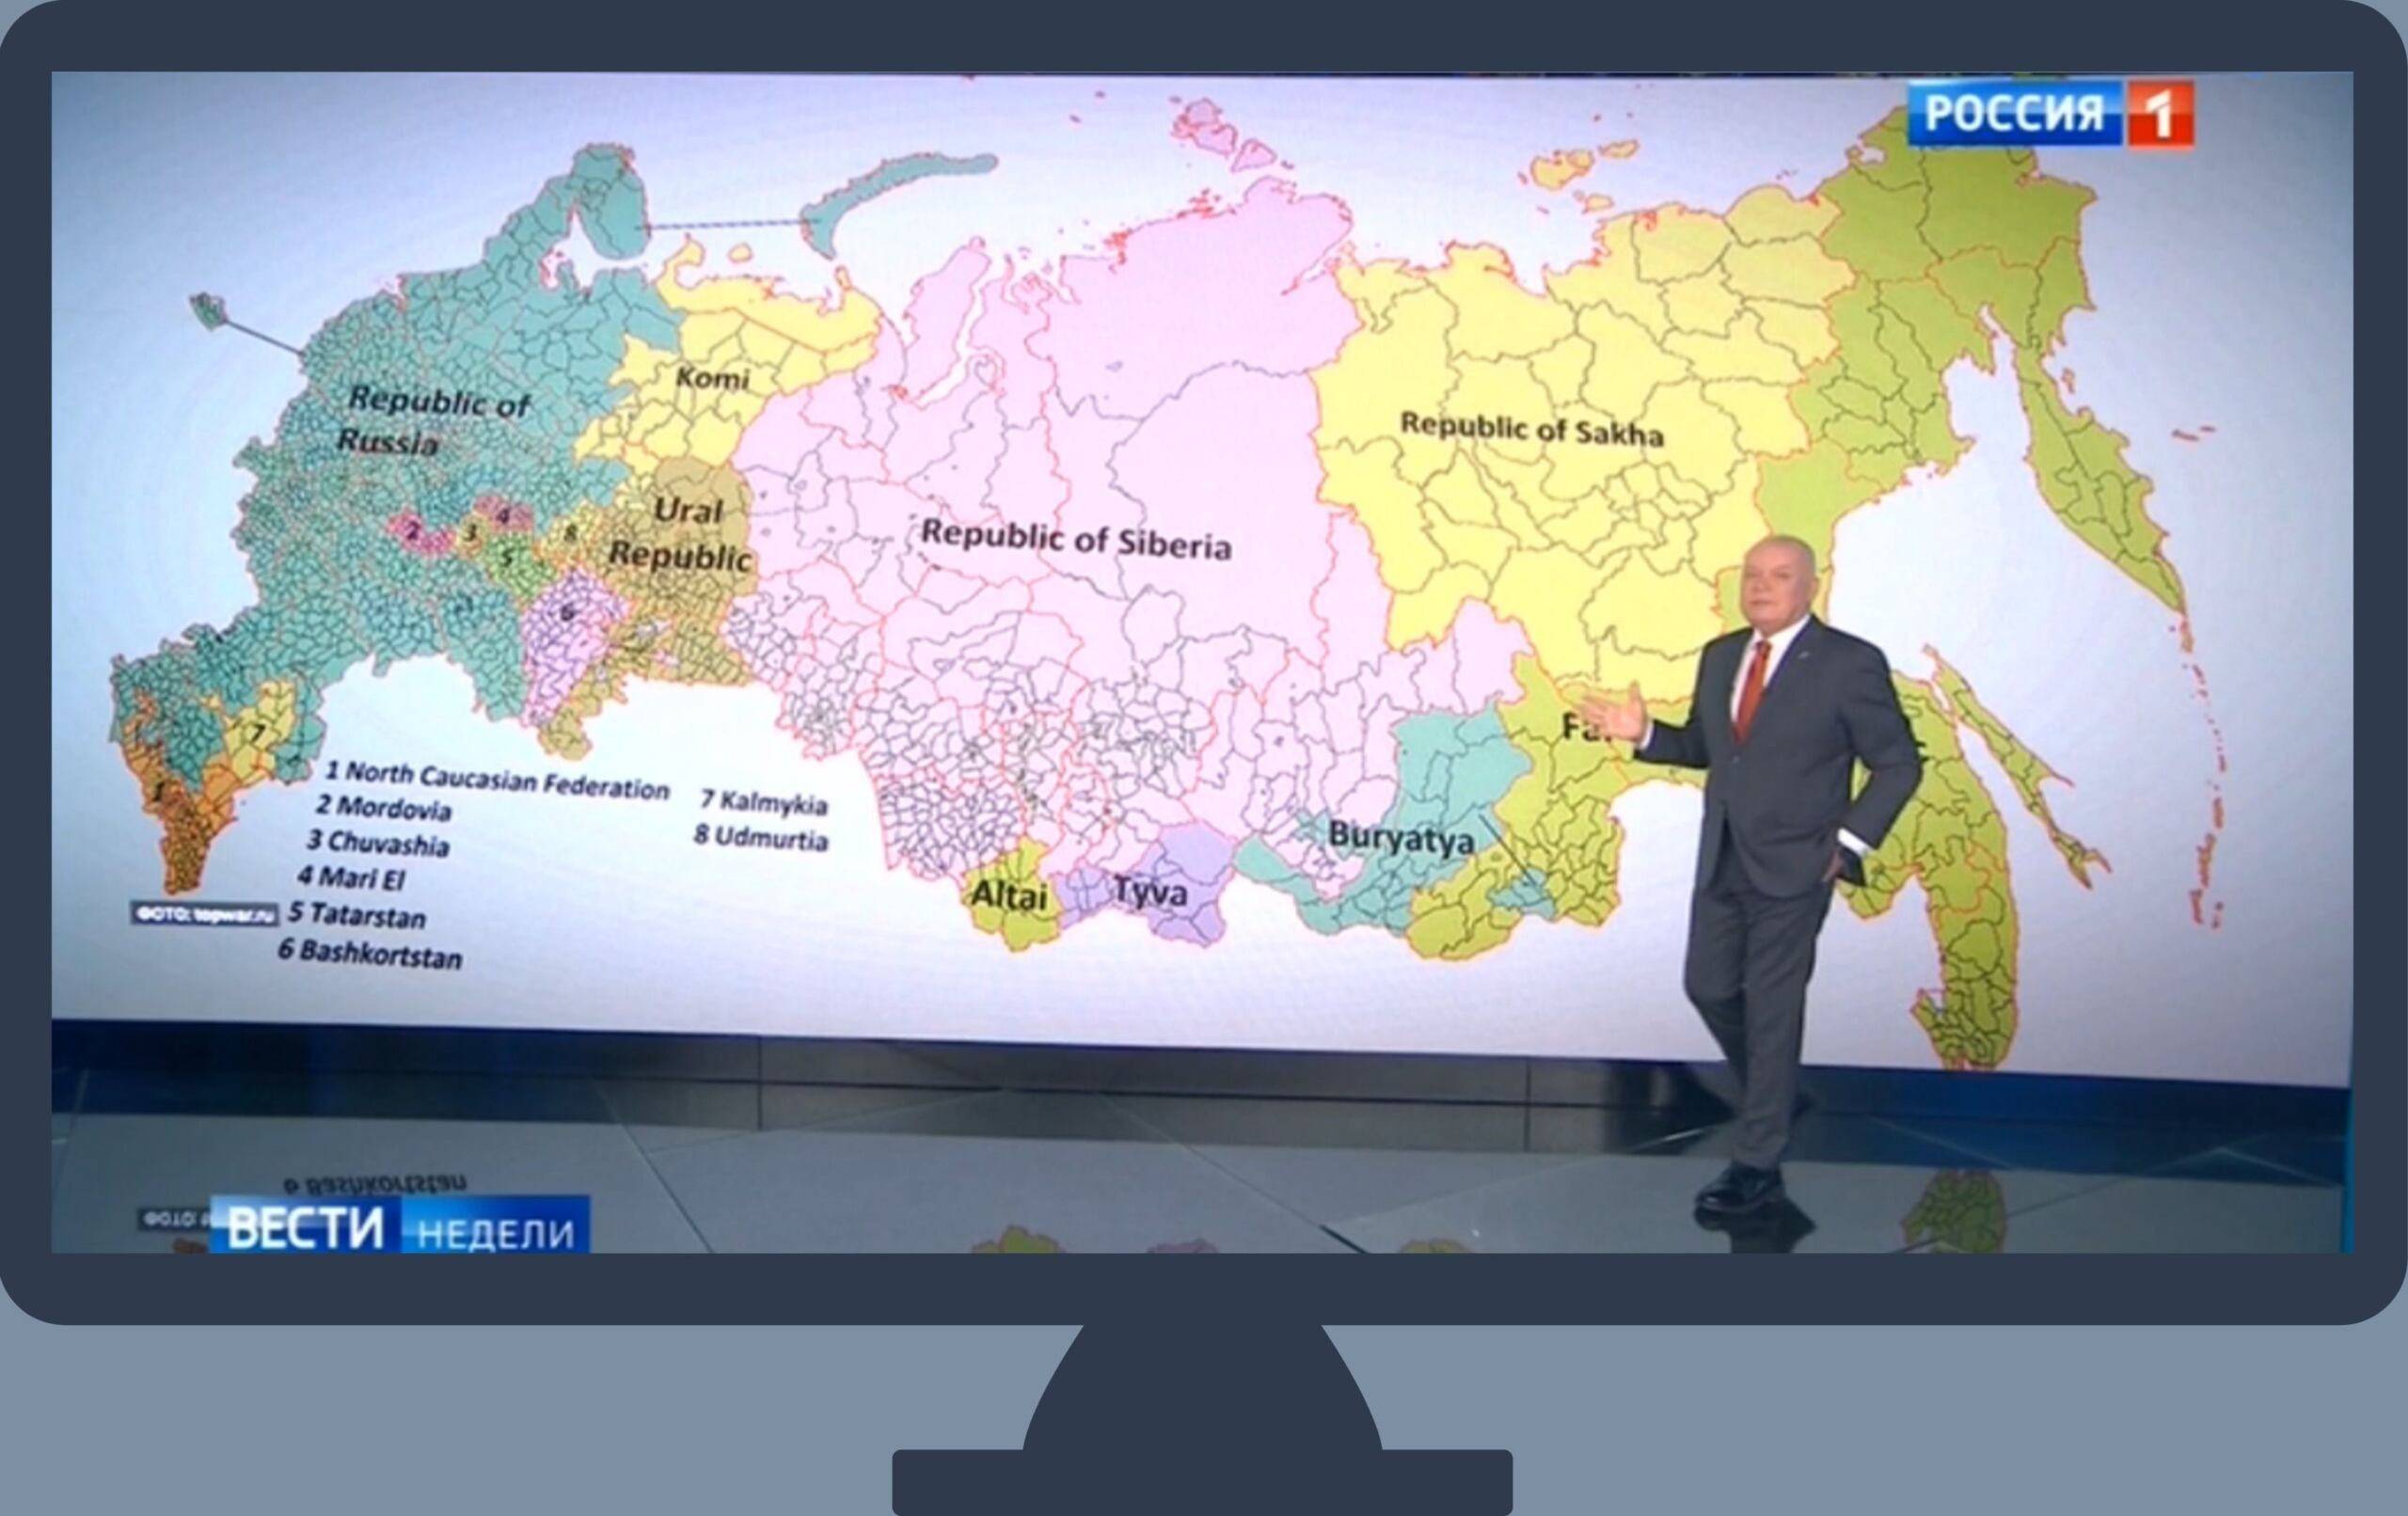 Mężczyzna przed mapa przedstawiającą możliwy podział Rosji